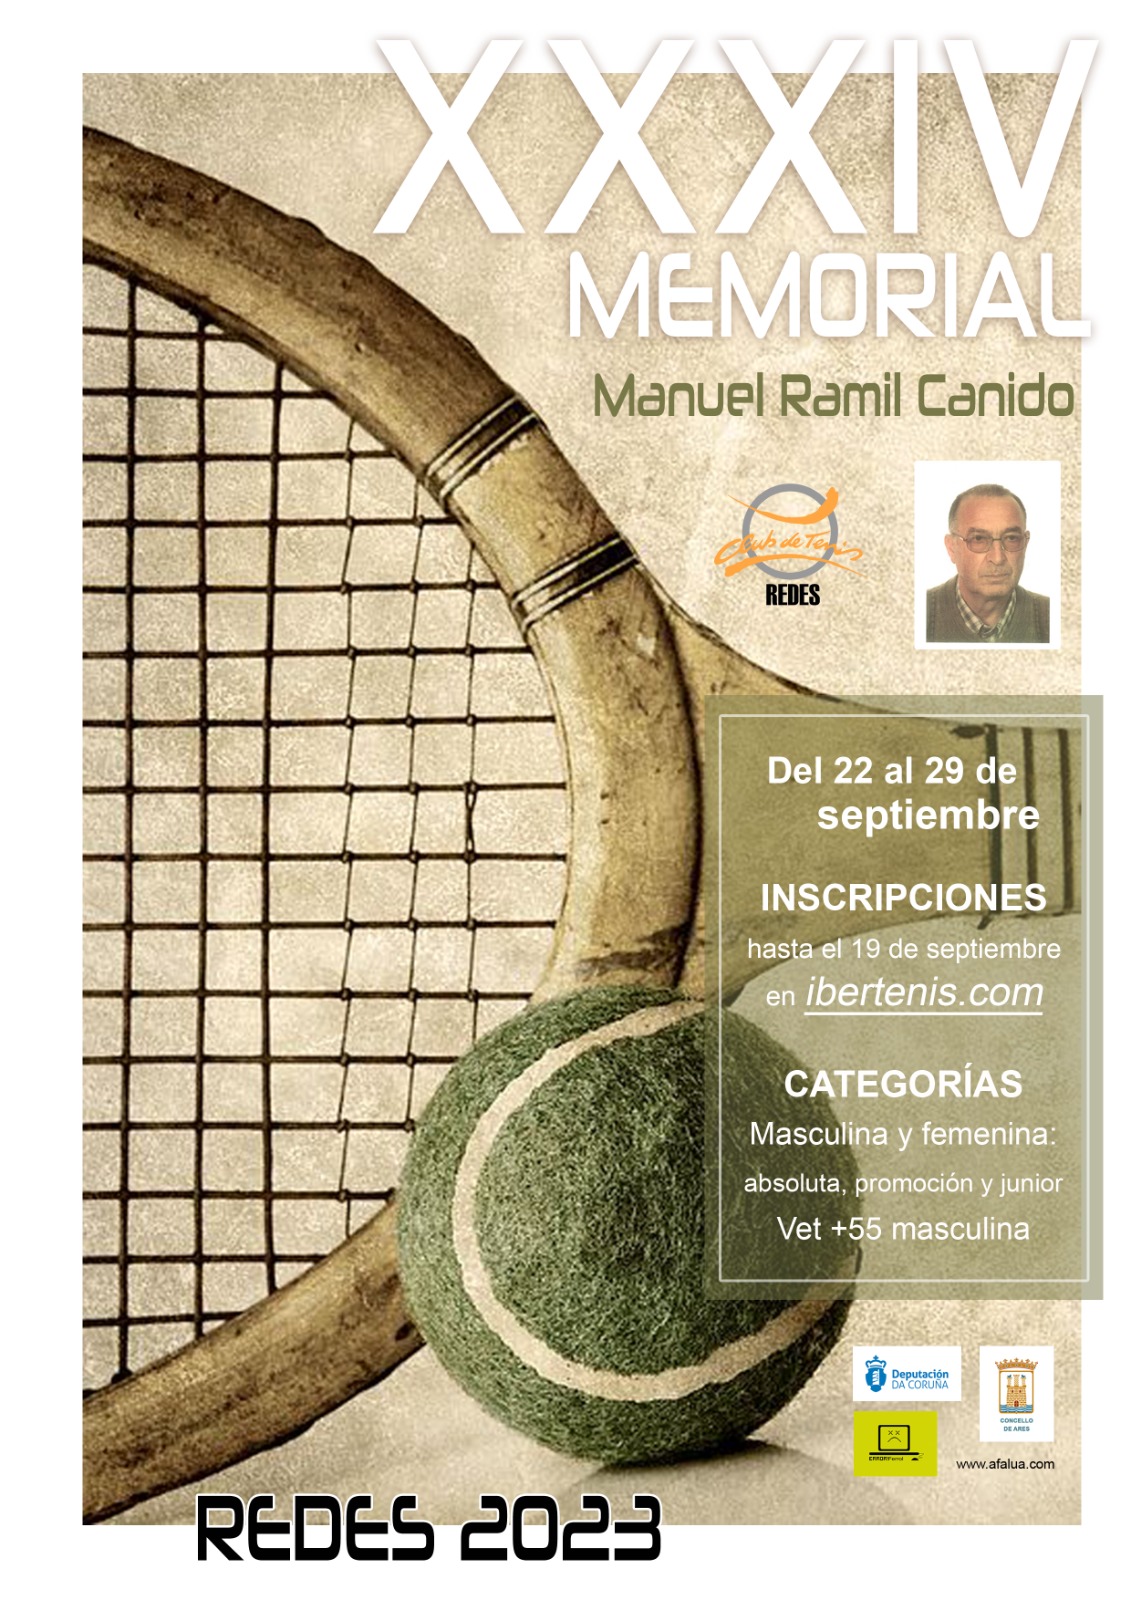 Cartel del XXXIV MEMORIAL MANUEL RAMIL CANIDO